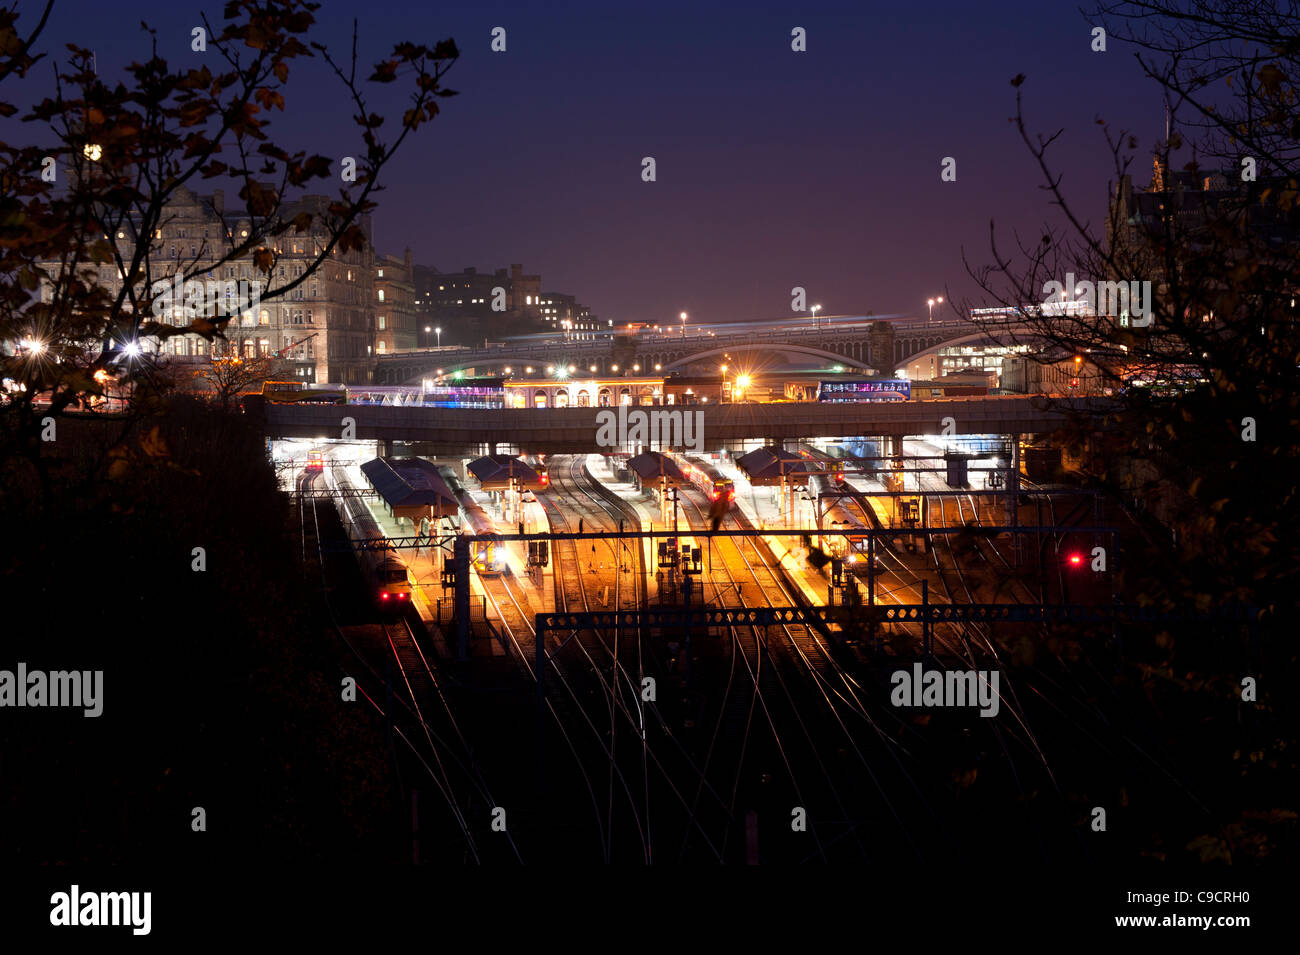 Blick auf Edinburgh Waverley Station in der Nacht fotografiert. Stockfoto